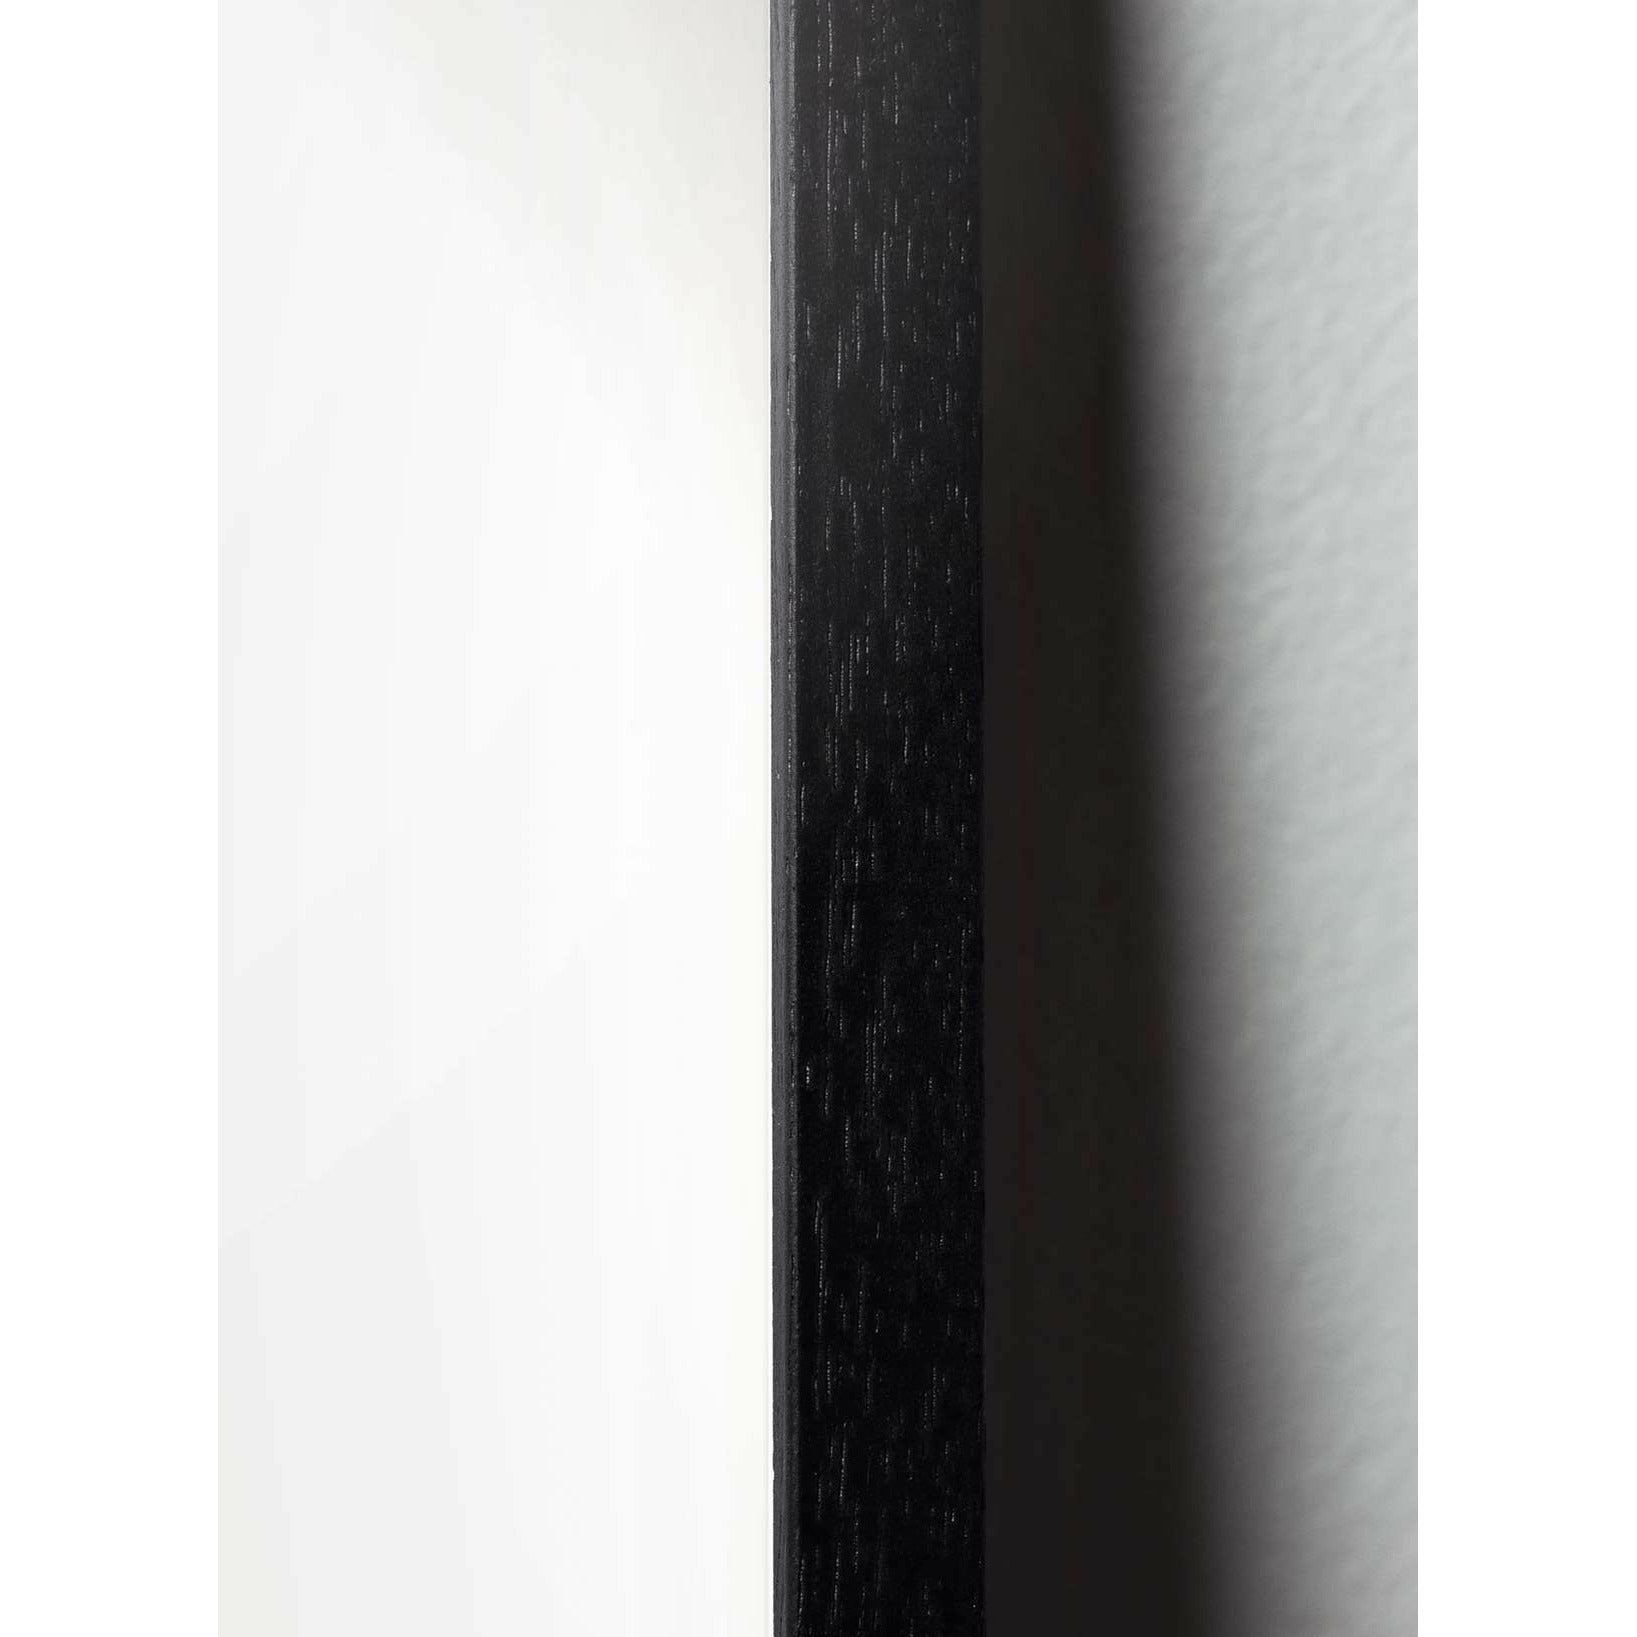 Pomysły plakat jaja, rama wykonana z czarnego lakierowanego drewna 30x40 cm, brązowy